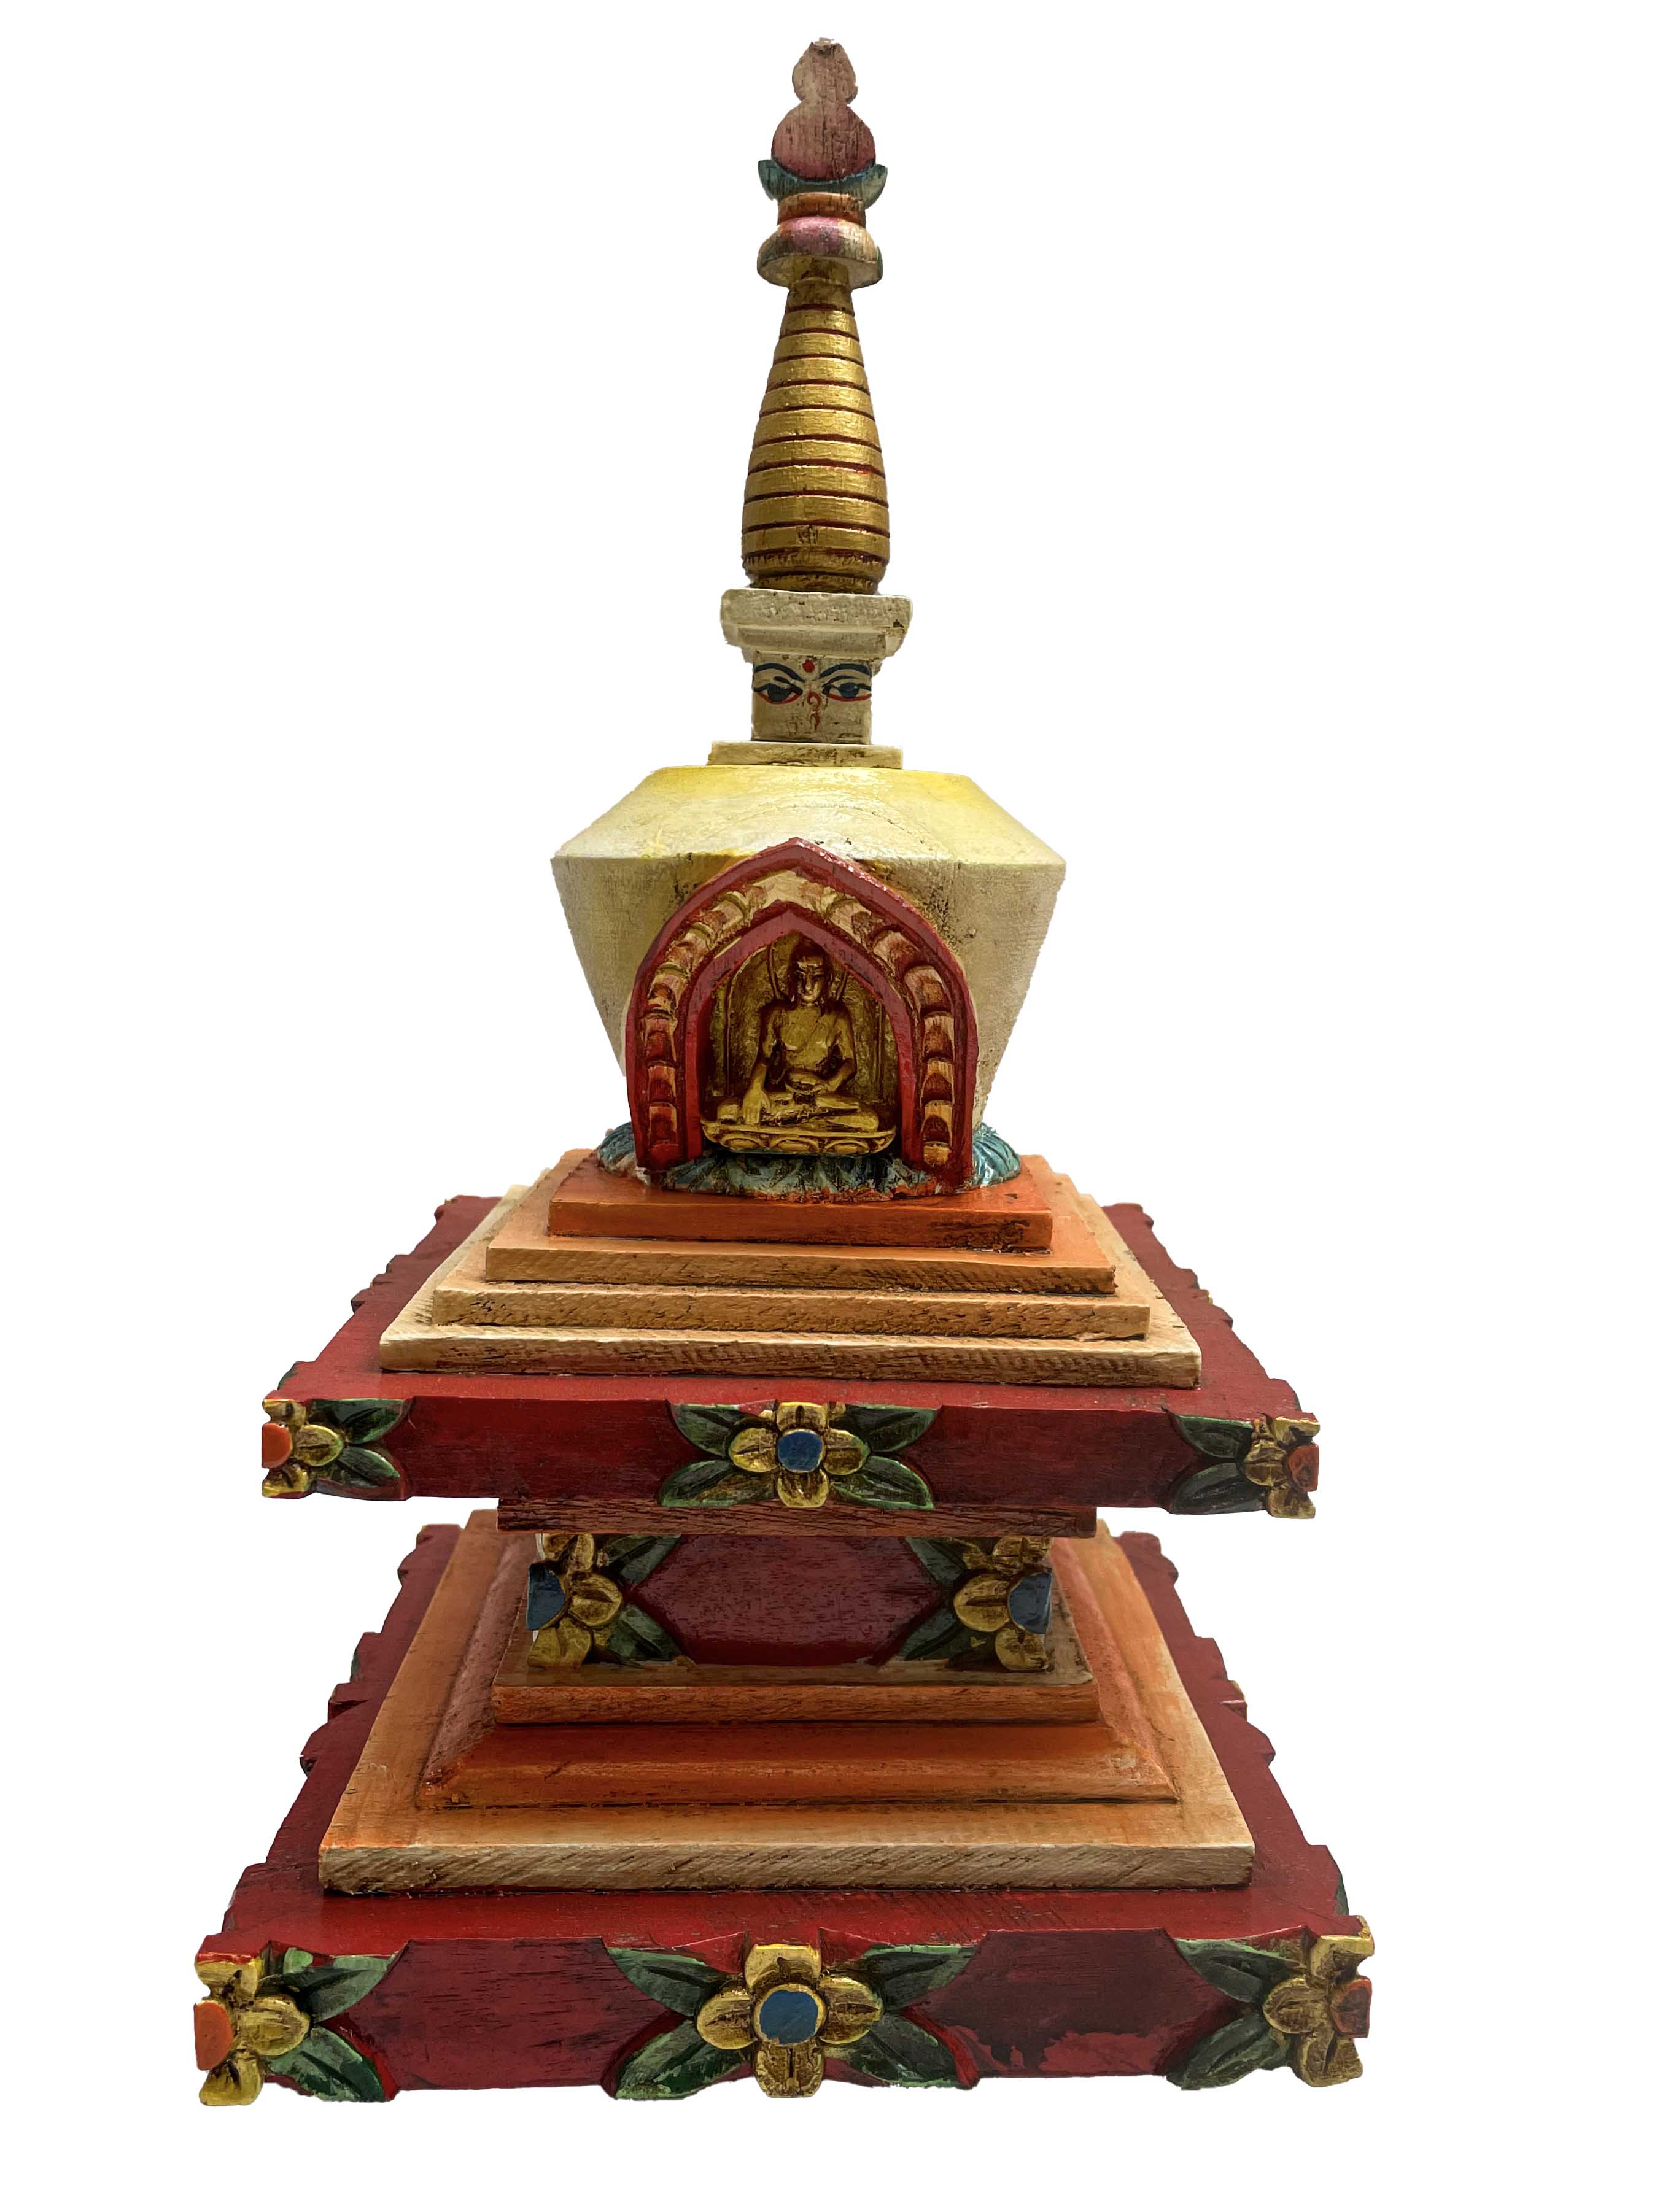 Buddhist Wooden Statue Of Stupa, With Shakyamuni Buddha, traditional Color Finishing